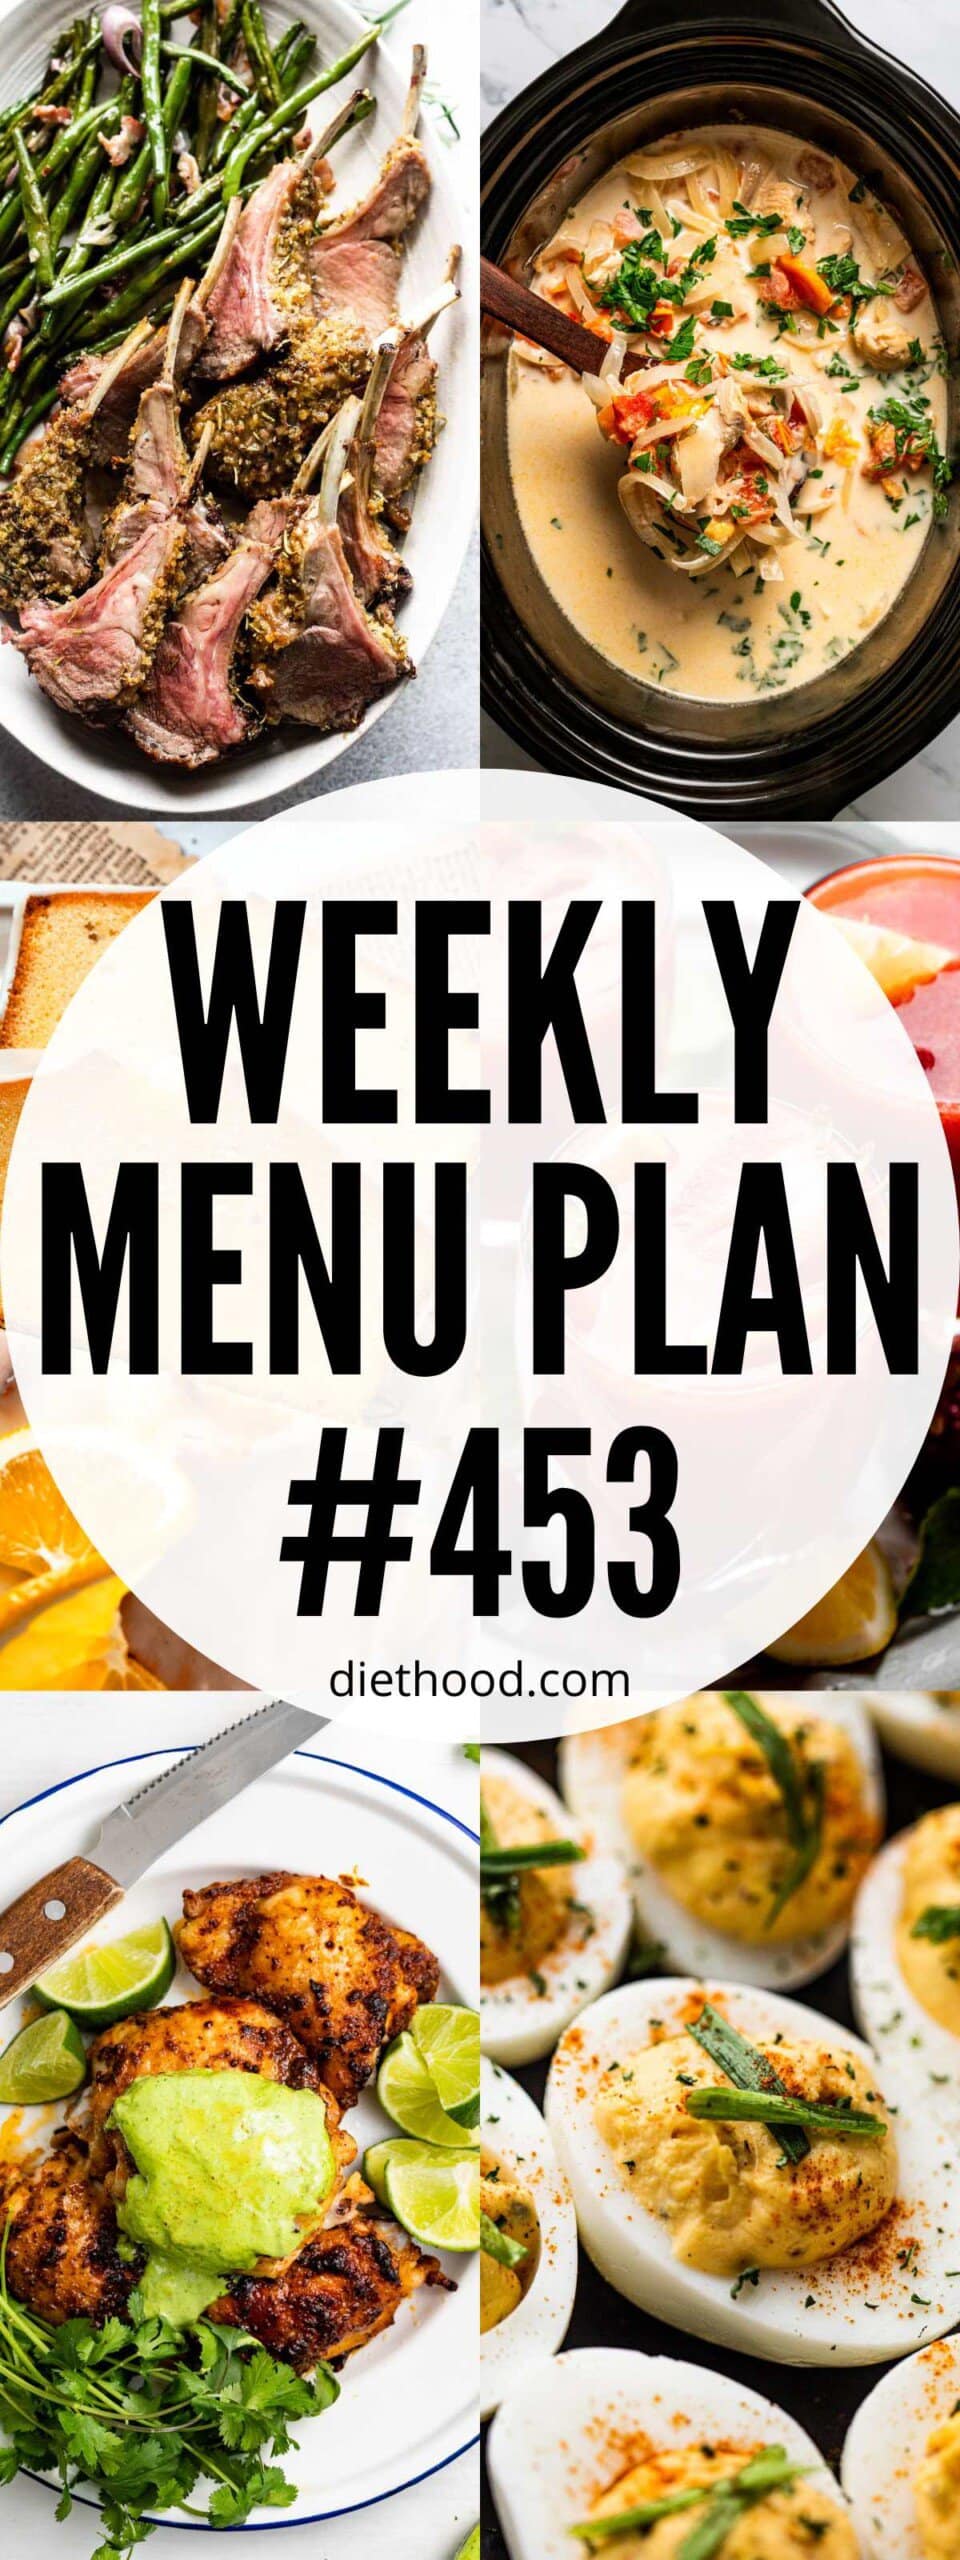 Weekly Menu Plan 453 six image collage Pinterest image.